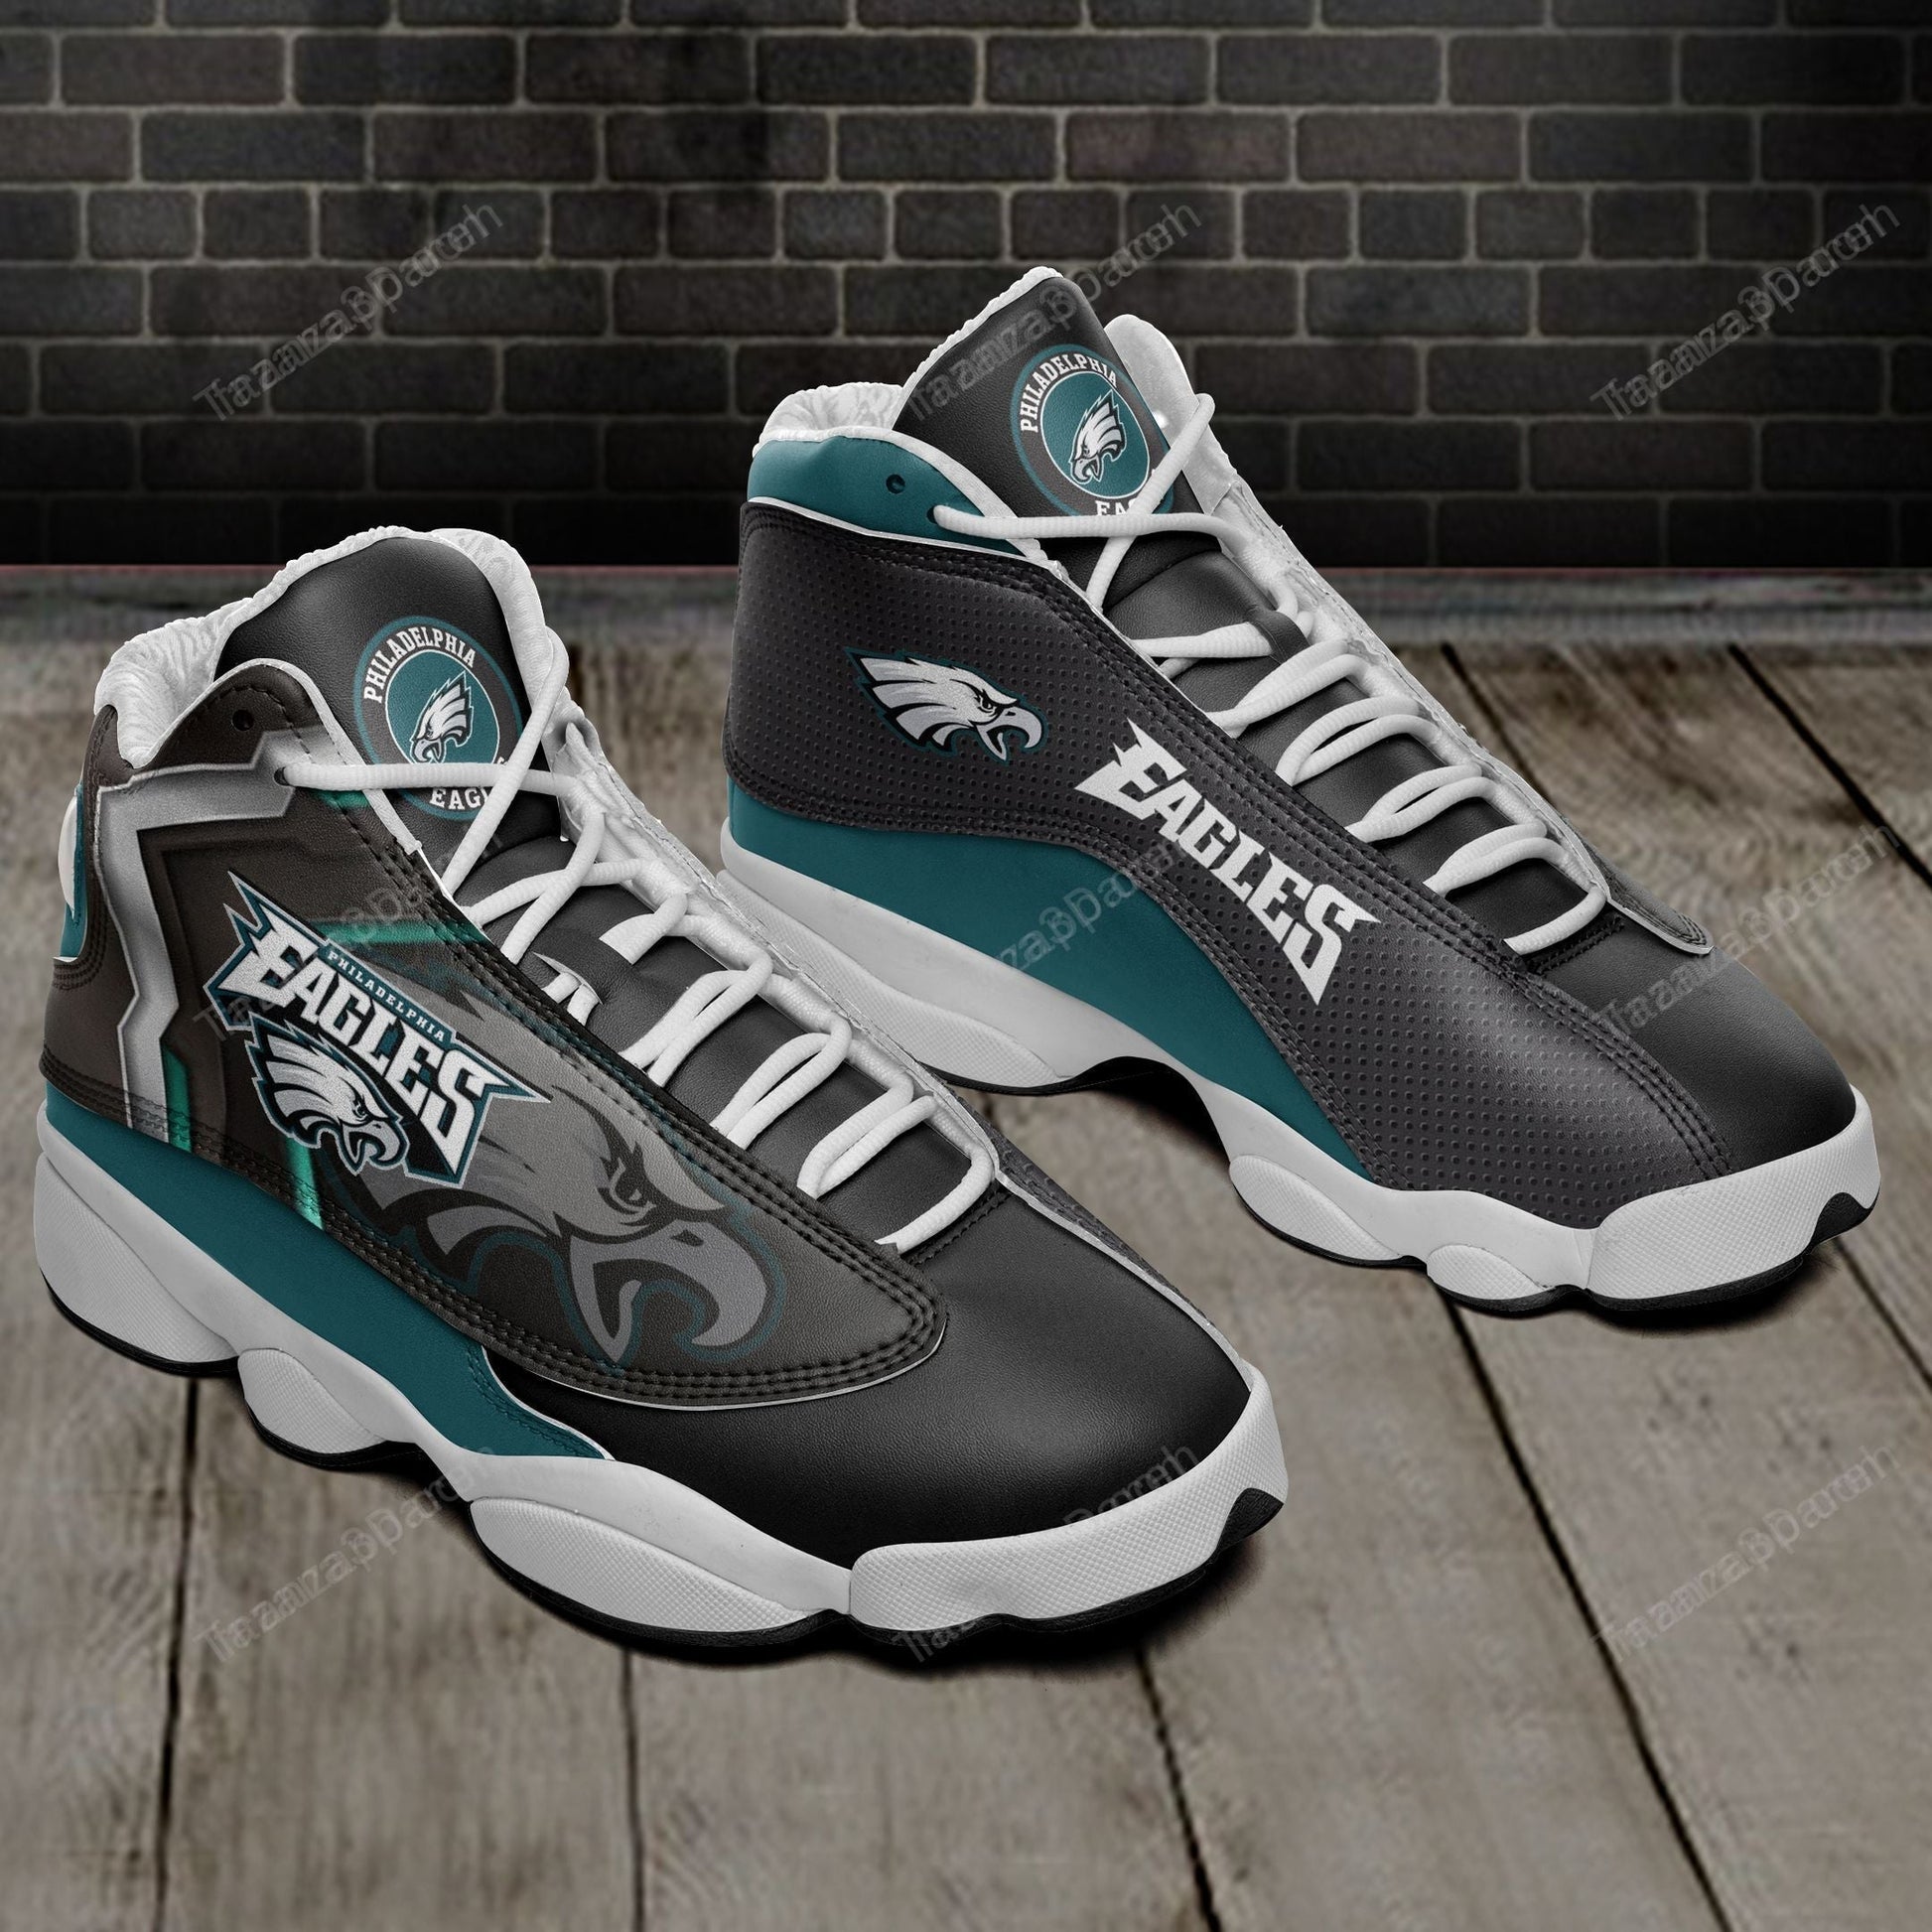 Philadelphia Eagles Custom Shoes Sneakers 653 Perfect Gift For Fan-Gear Wanta